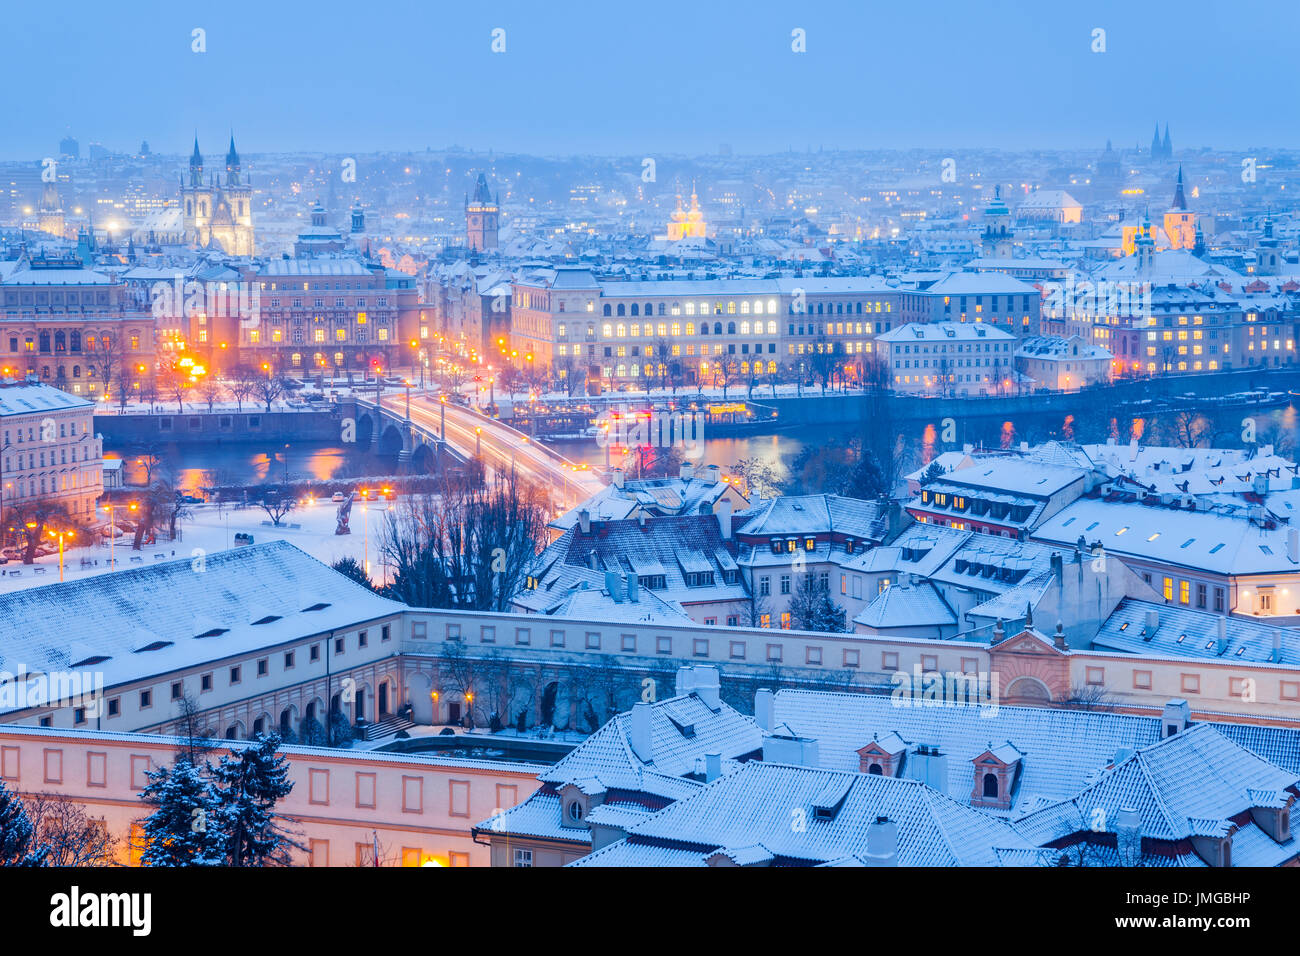 L'Europe, République tchèque, Tchéquie, Prague, l'UNESCO, Vieille Ville Historique Panorama avec tours d'église au cours de l'hiver avec de la neige la nuit, crépuscule Banque D'Images